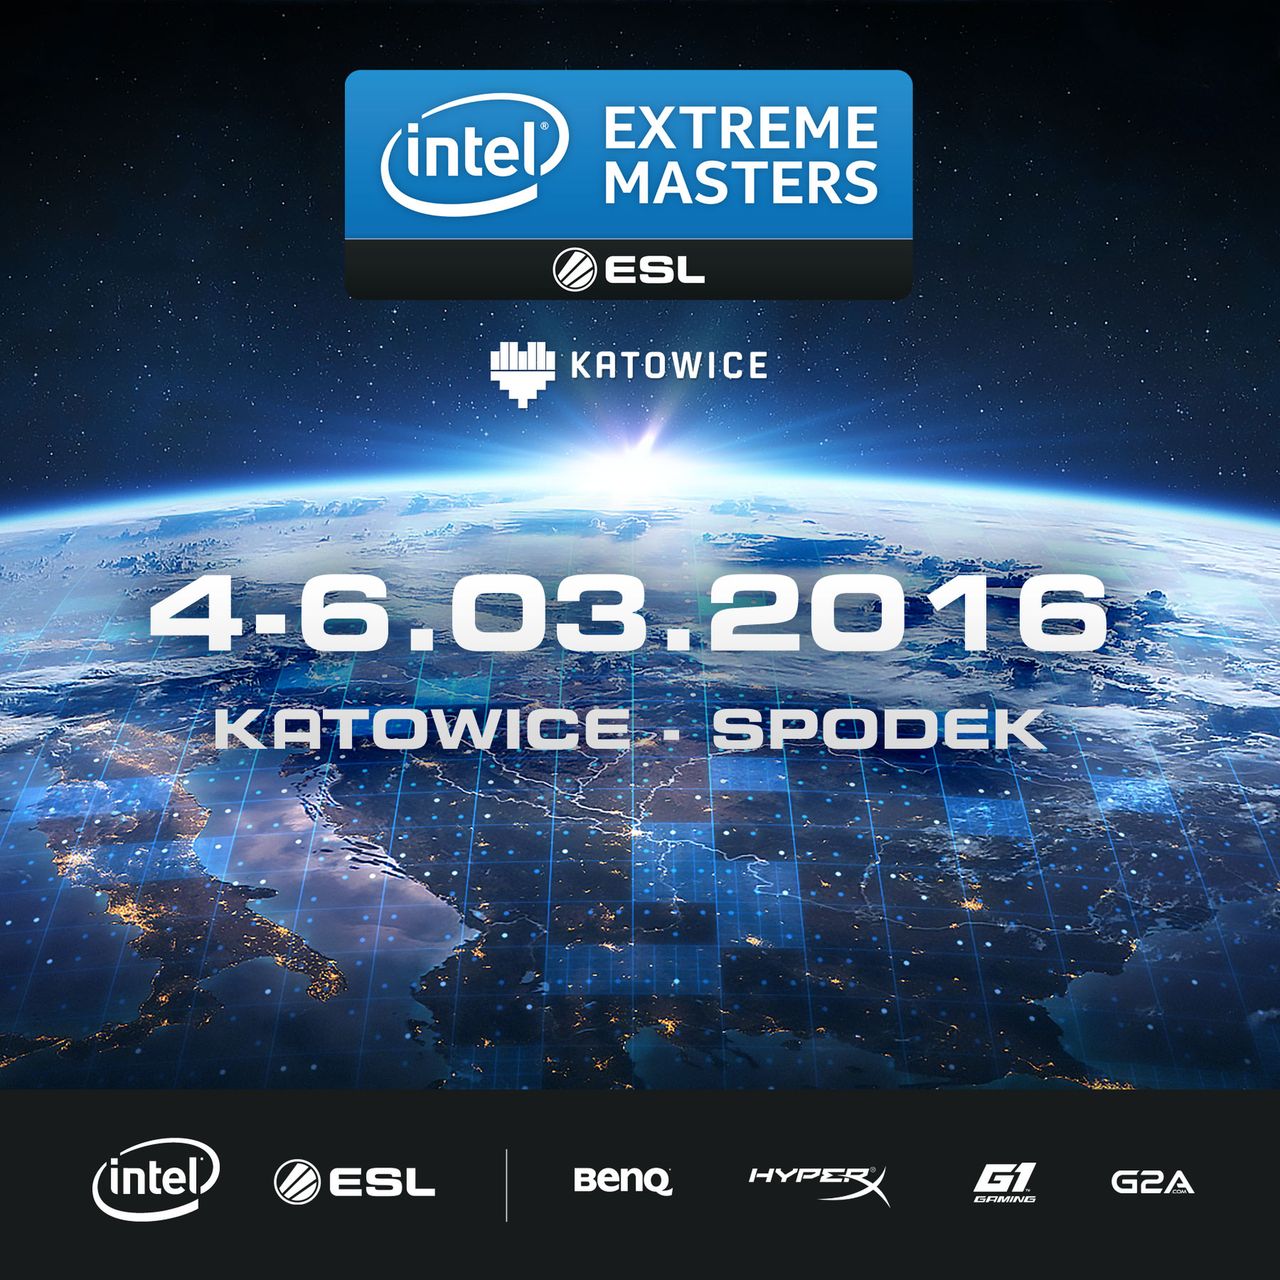 Przyszłoroczne Intel Extreme Masters odbędzie się 4-6 marca w Katowicach. CS: GO wraca na wielką scenę